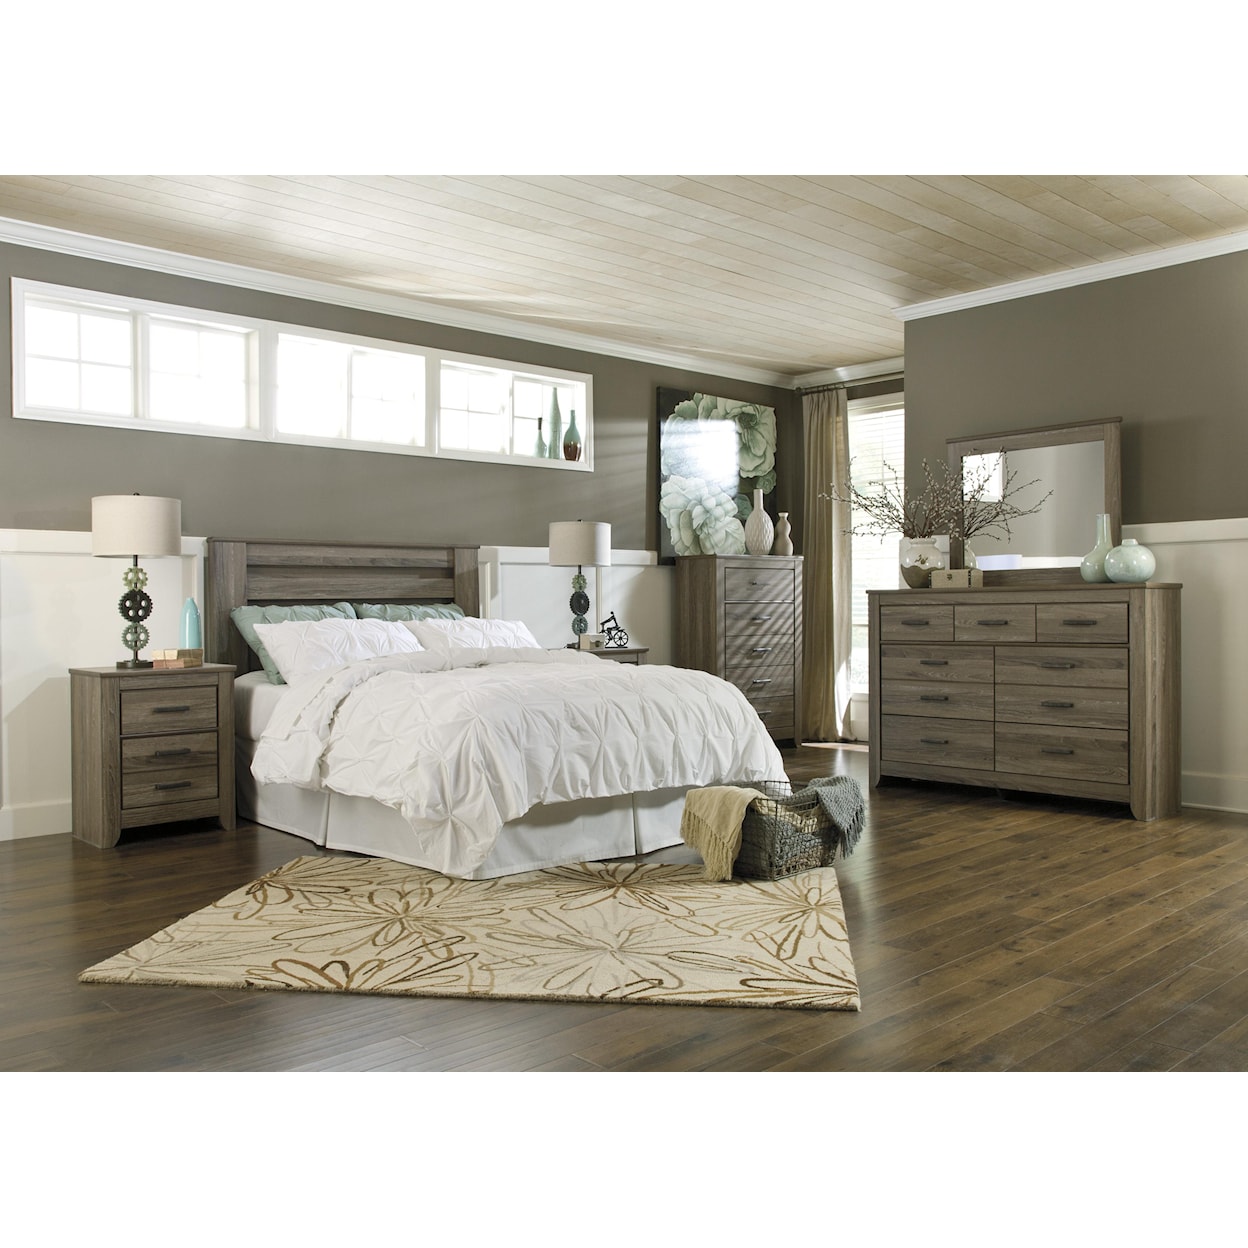 Ashley Furniture Signature Design Zelen Full/Queen Bedroom Group